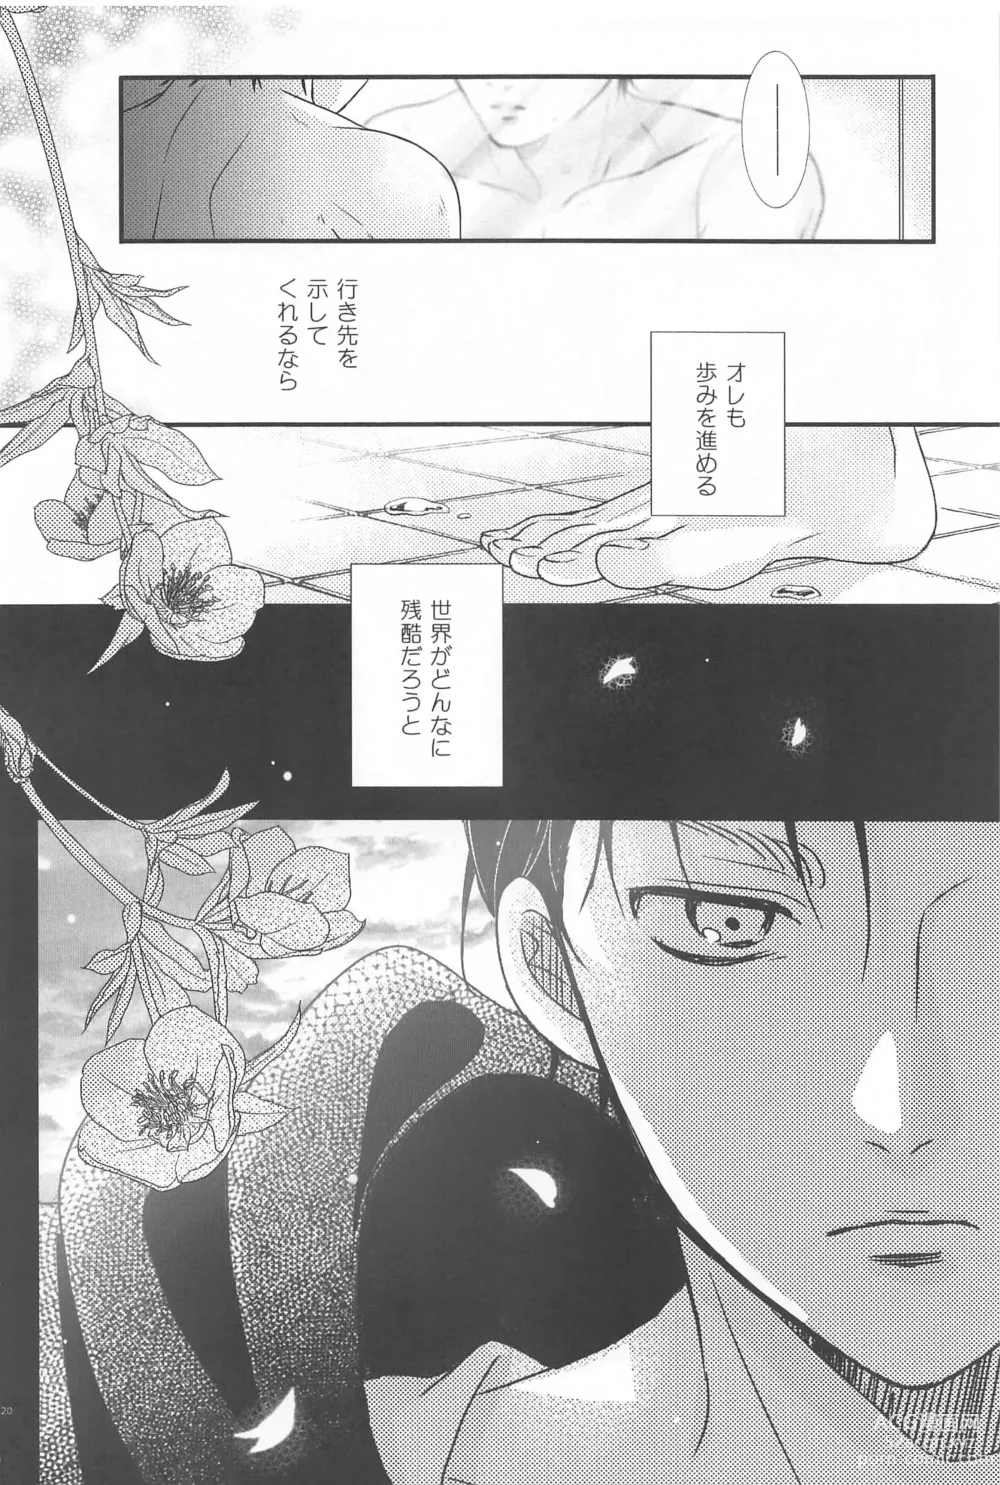 Page 19 of doujinshi Short x Assort